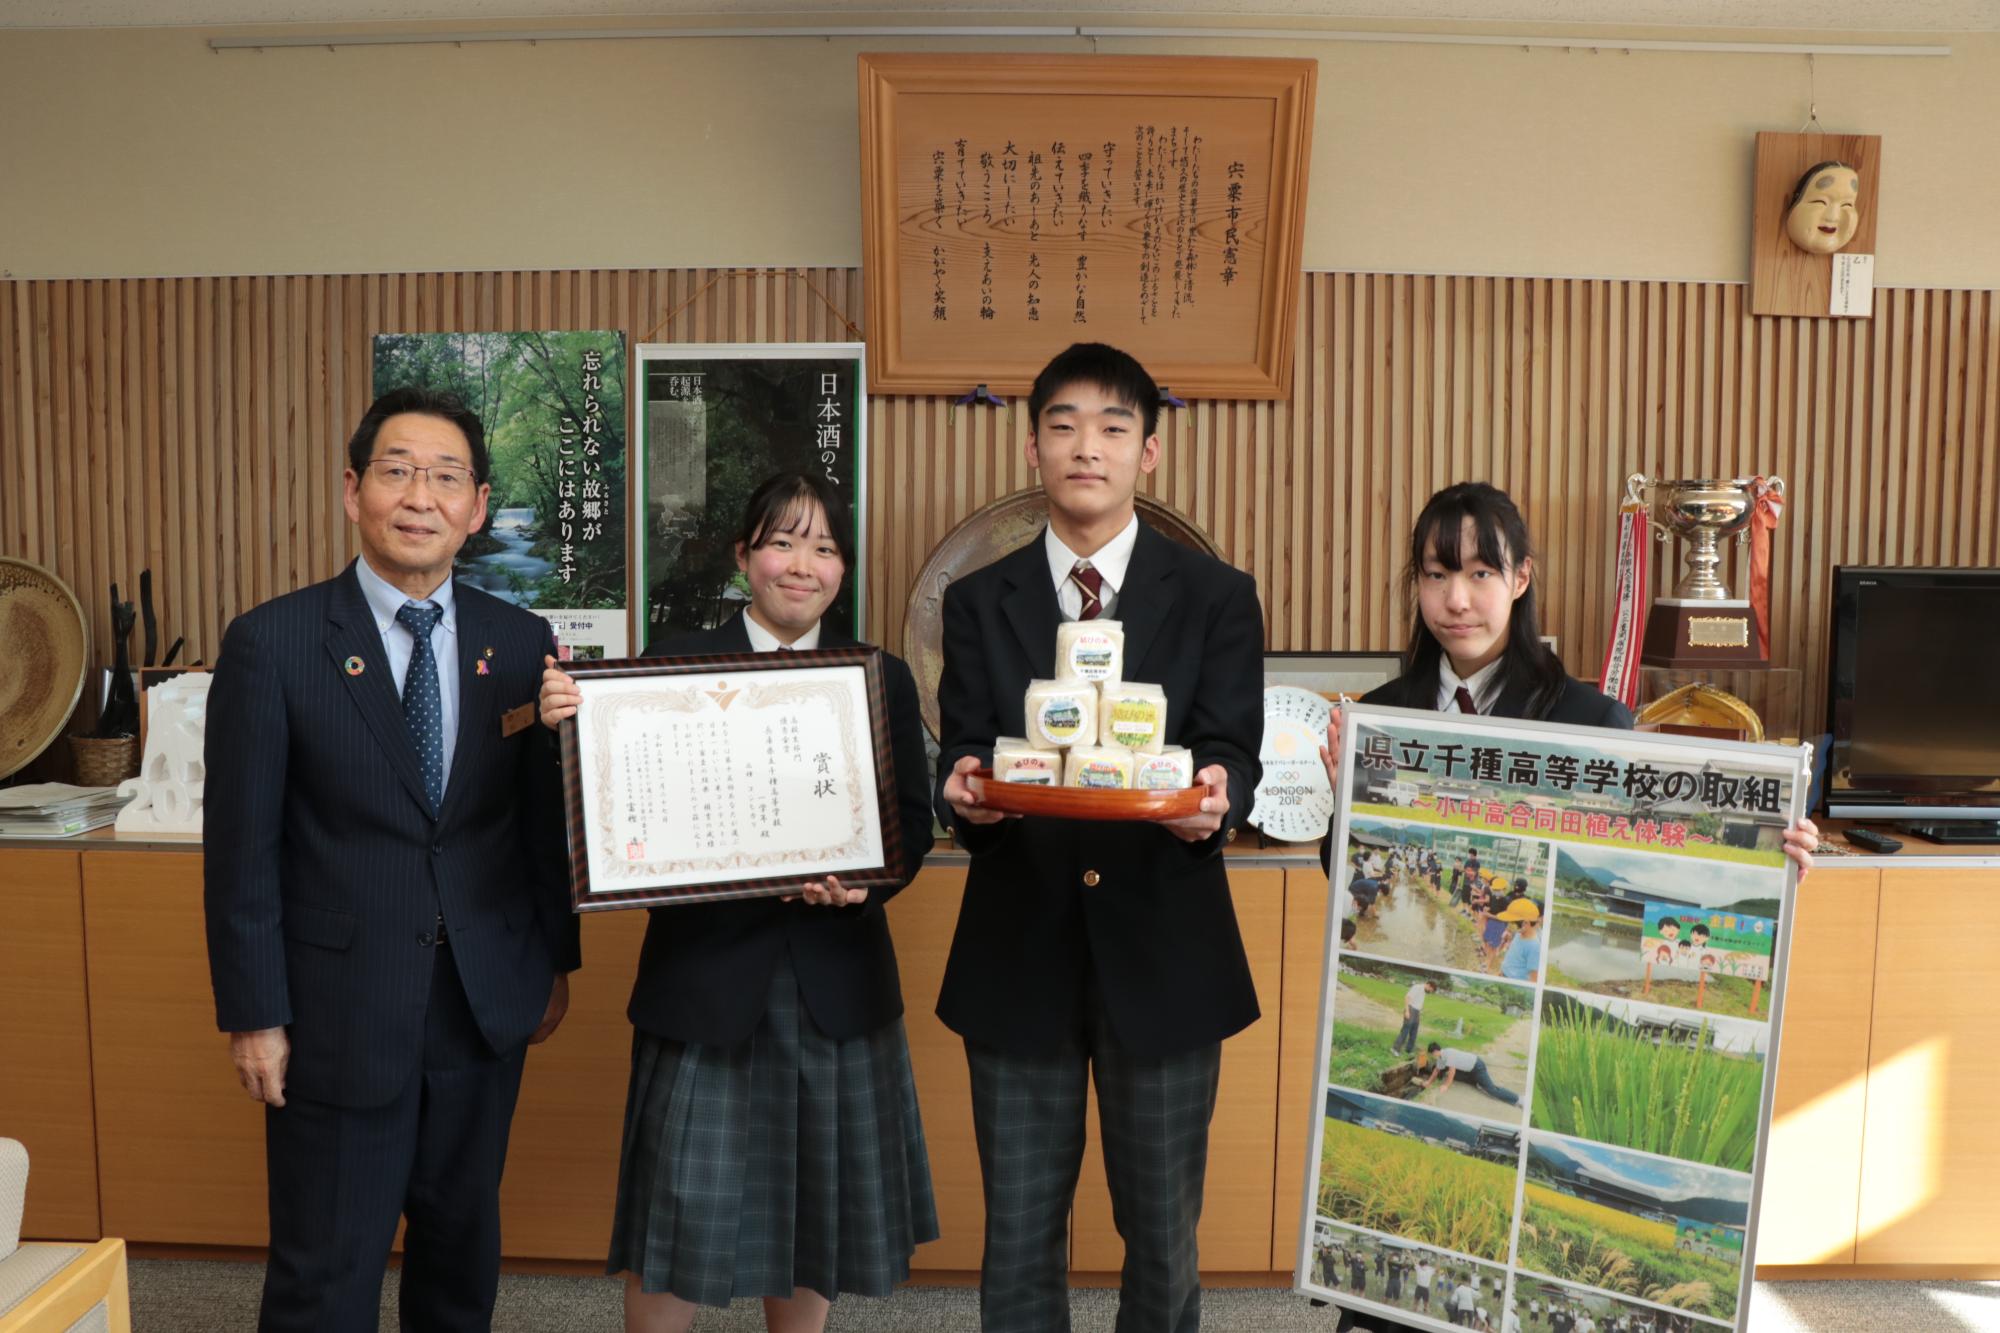 左から福元市長、賞状を手にした千種高校の生徒が並んでいる写真